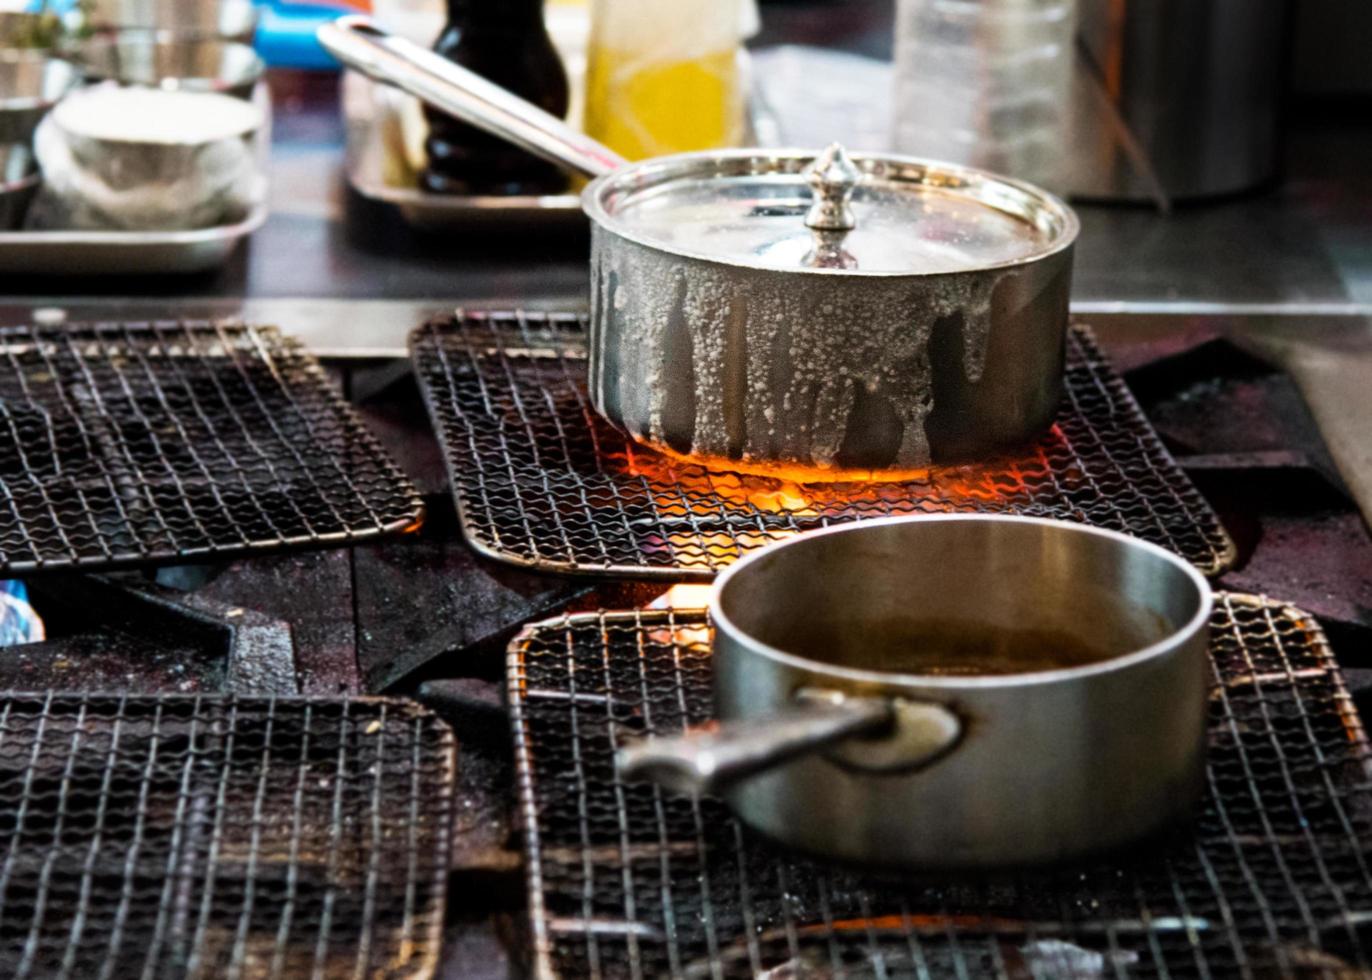 Koch kocht mit Flamme in einer Pfanne auf einem Küchenherd foto